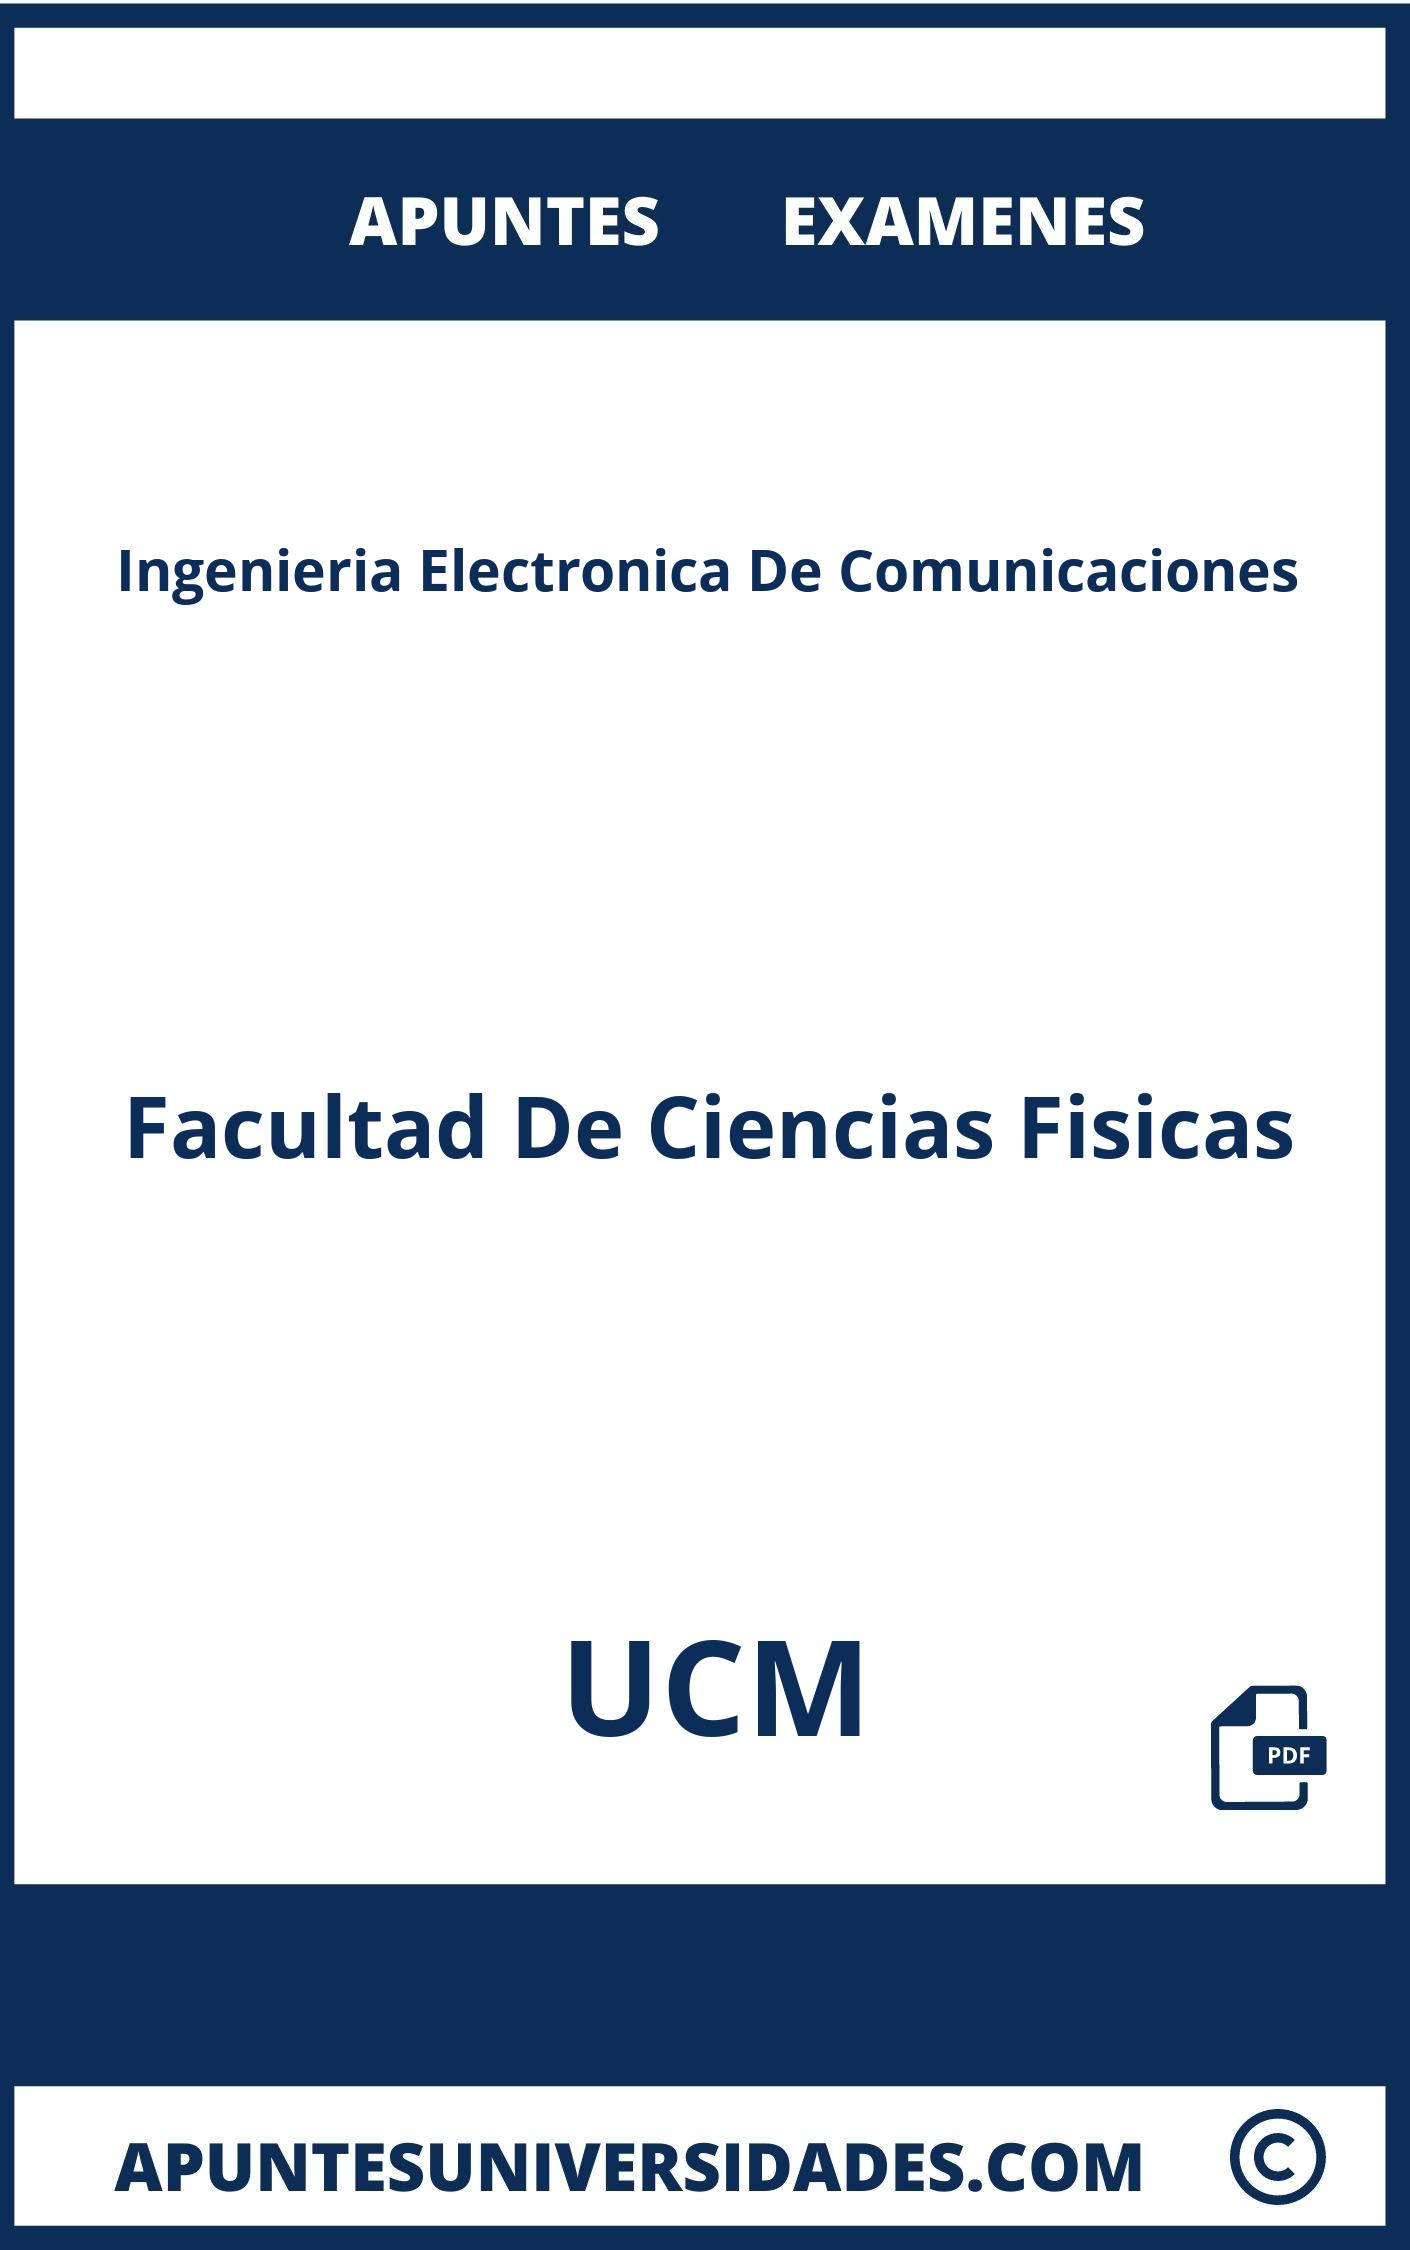 Examenes Ingenieria Electronica De Comunicaciones UCM y Apuntes